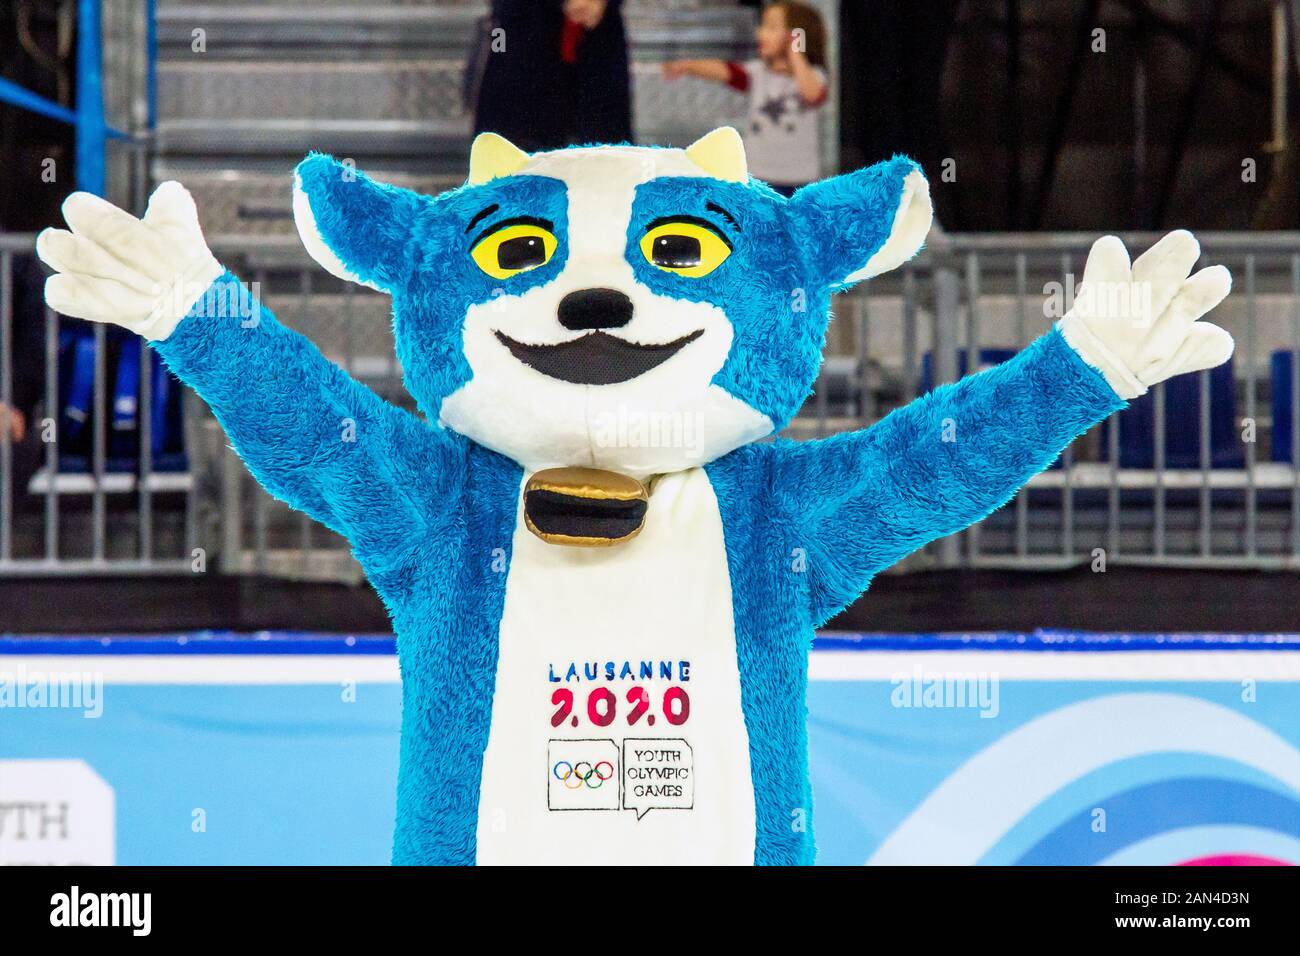 Losanna, Svizzera. 15th gennaio 2020. Yodli, la mascotte ufficiale dei Giochi Olimpici invernali di Losanna 2020, presso l'Arena di pattinaggio di Losanna. Credito: Iain Mcguinness / Alamy Live News Foto Stock